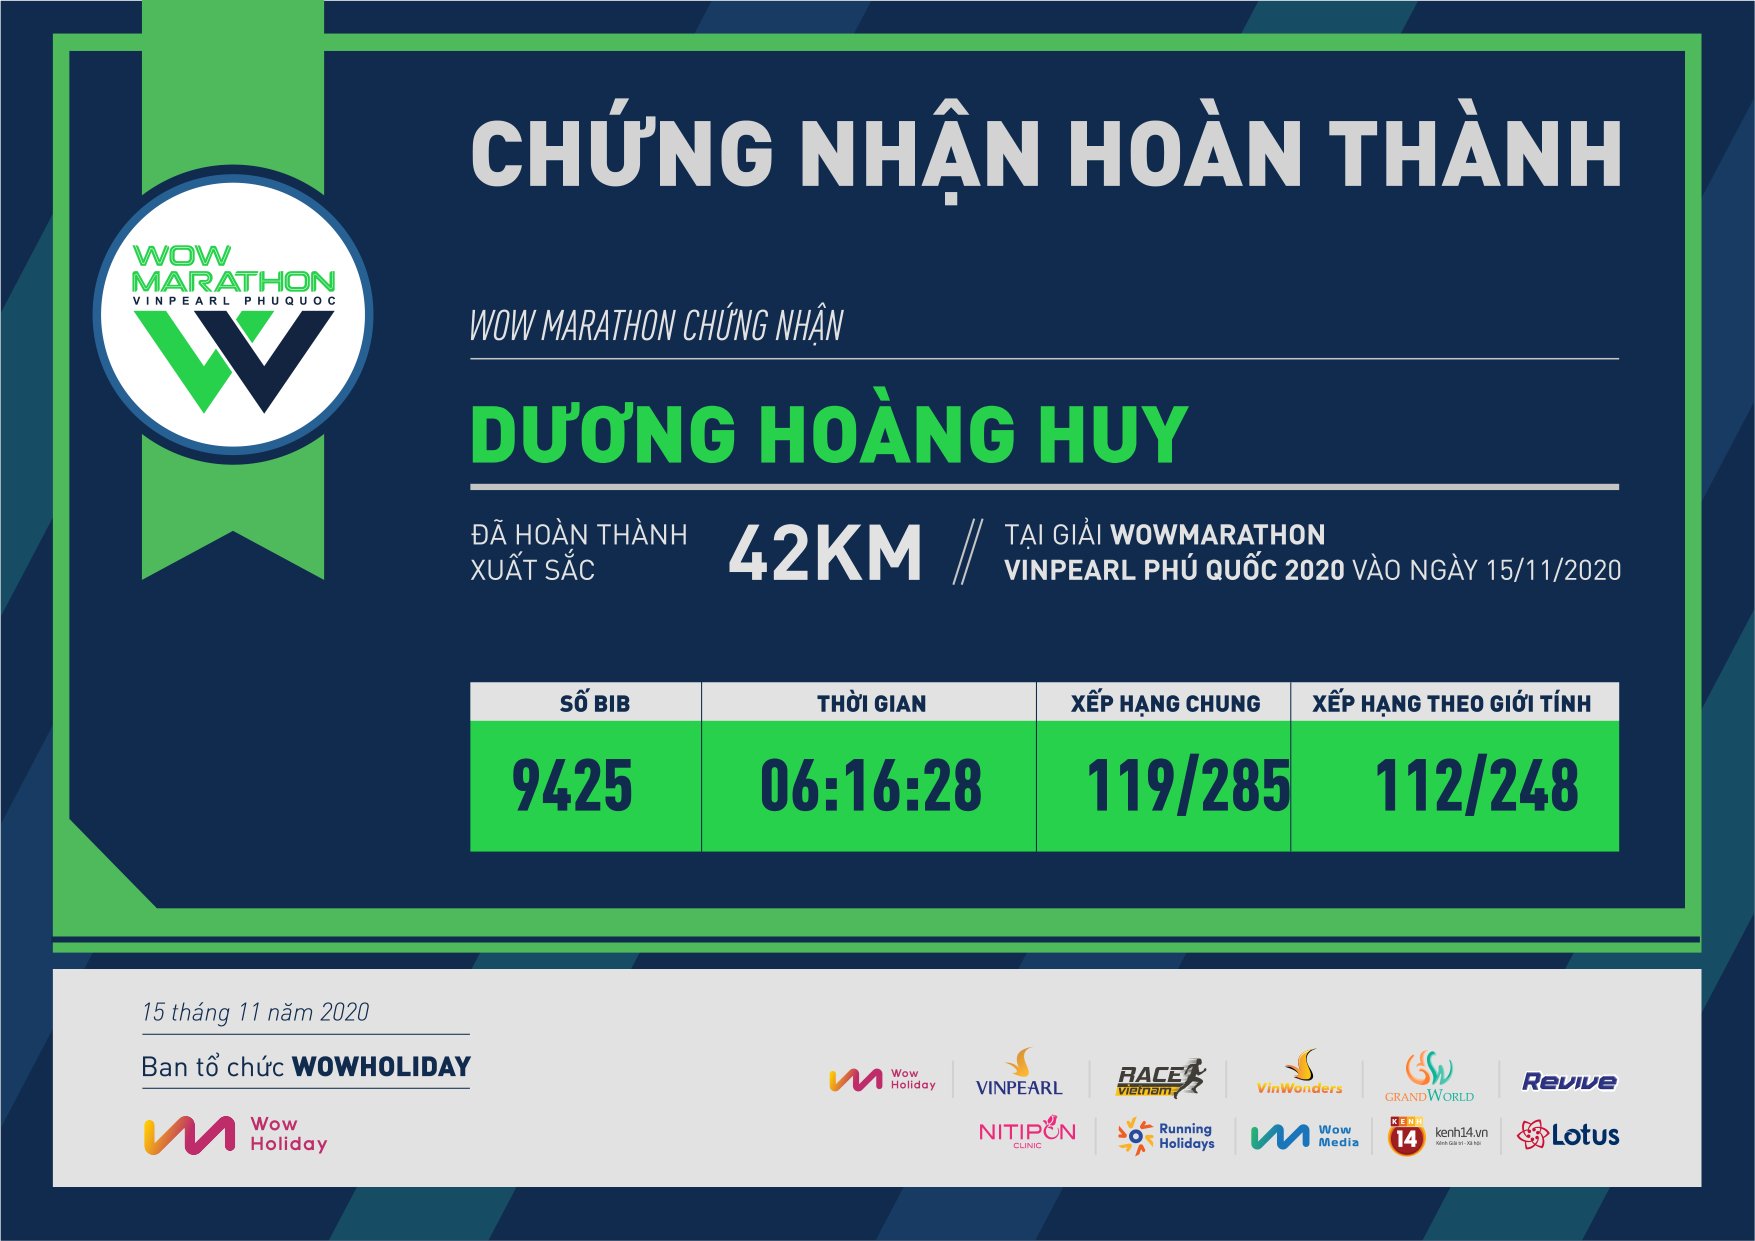 9425 - Dương Hoàng Huy